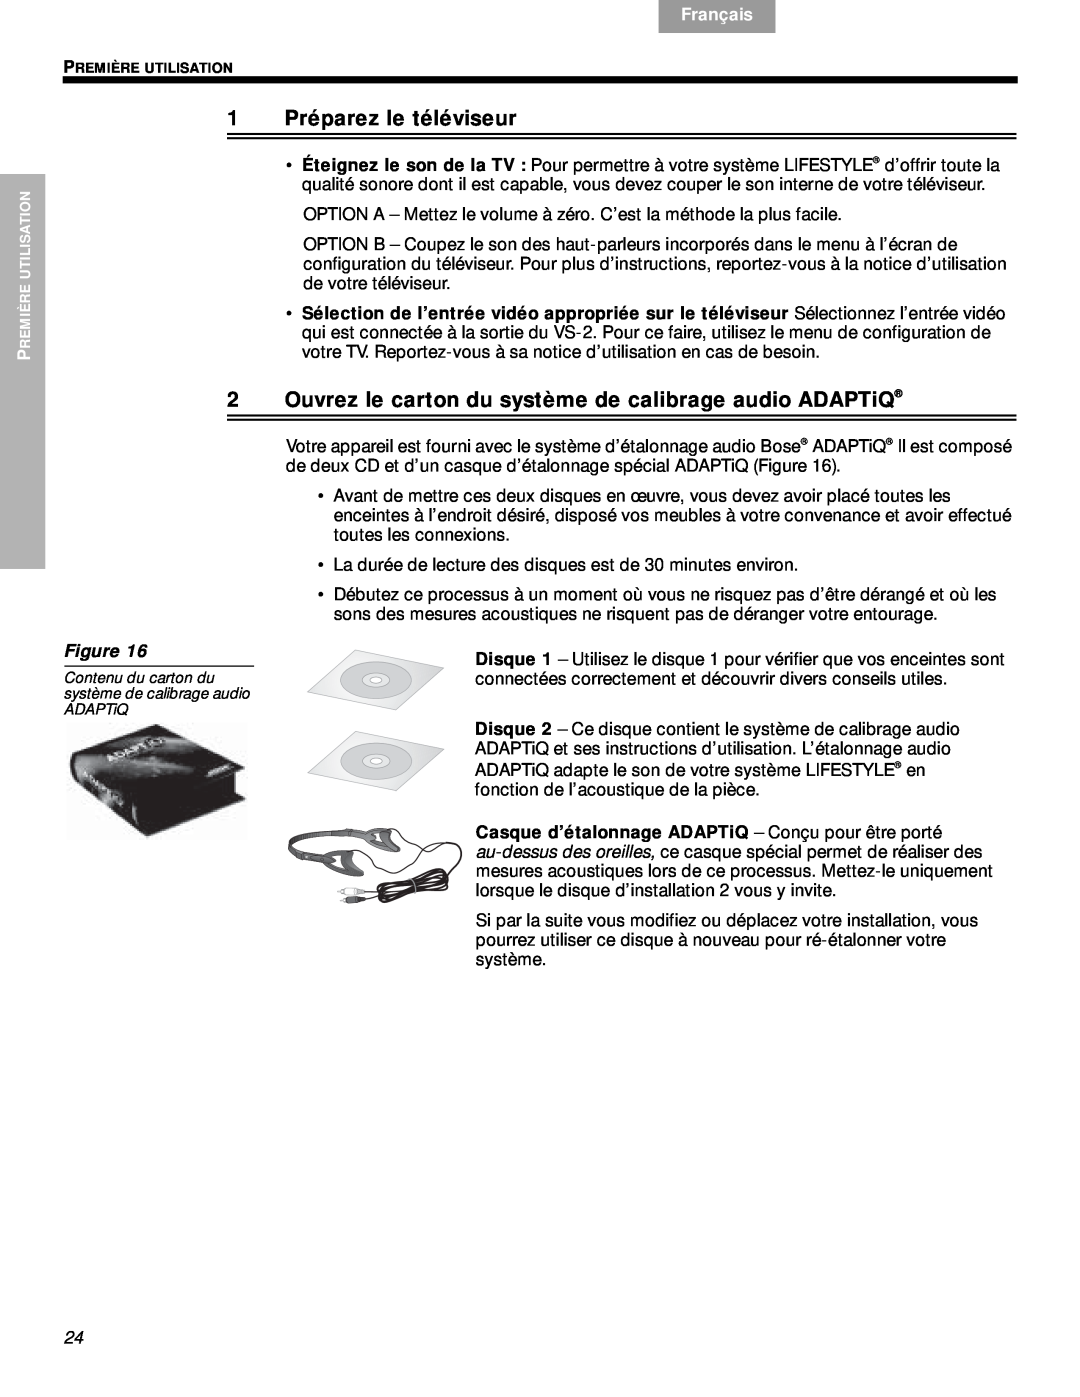 Bose VS-2 manual 1Préparez le téléviseur, Svenska, Nederlands, Français, Español, English, Figure 